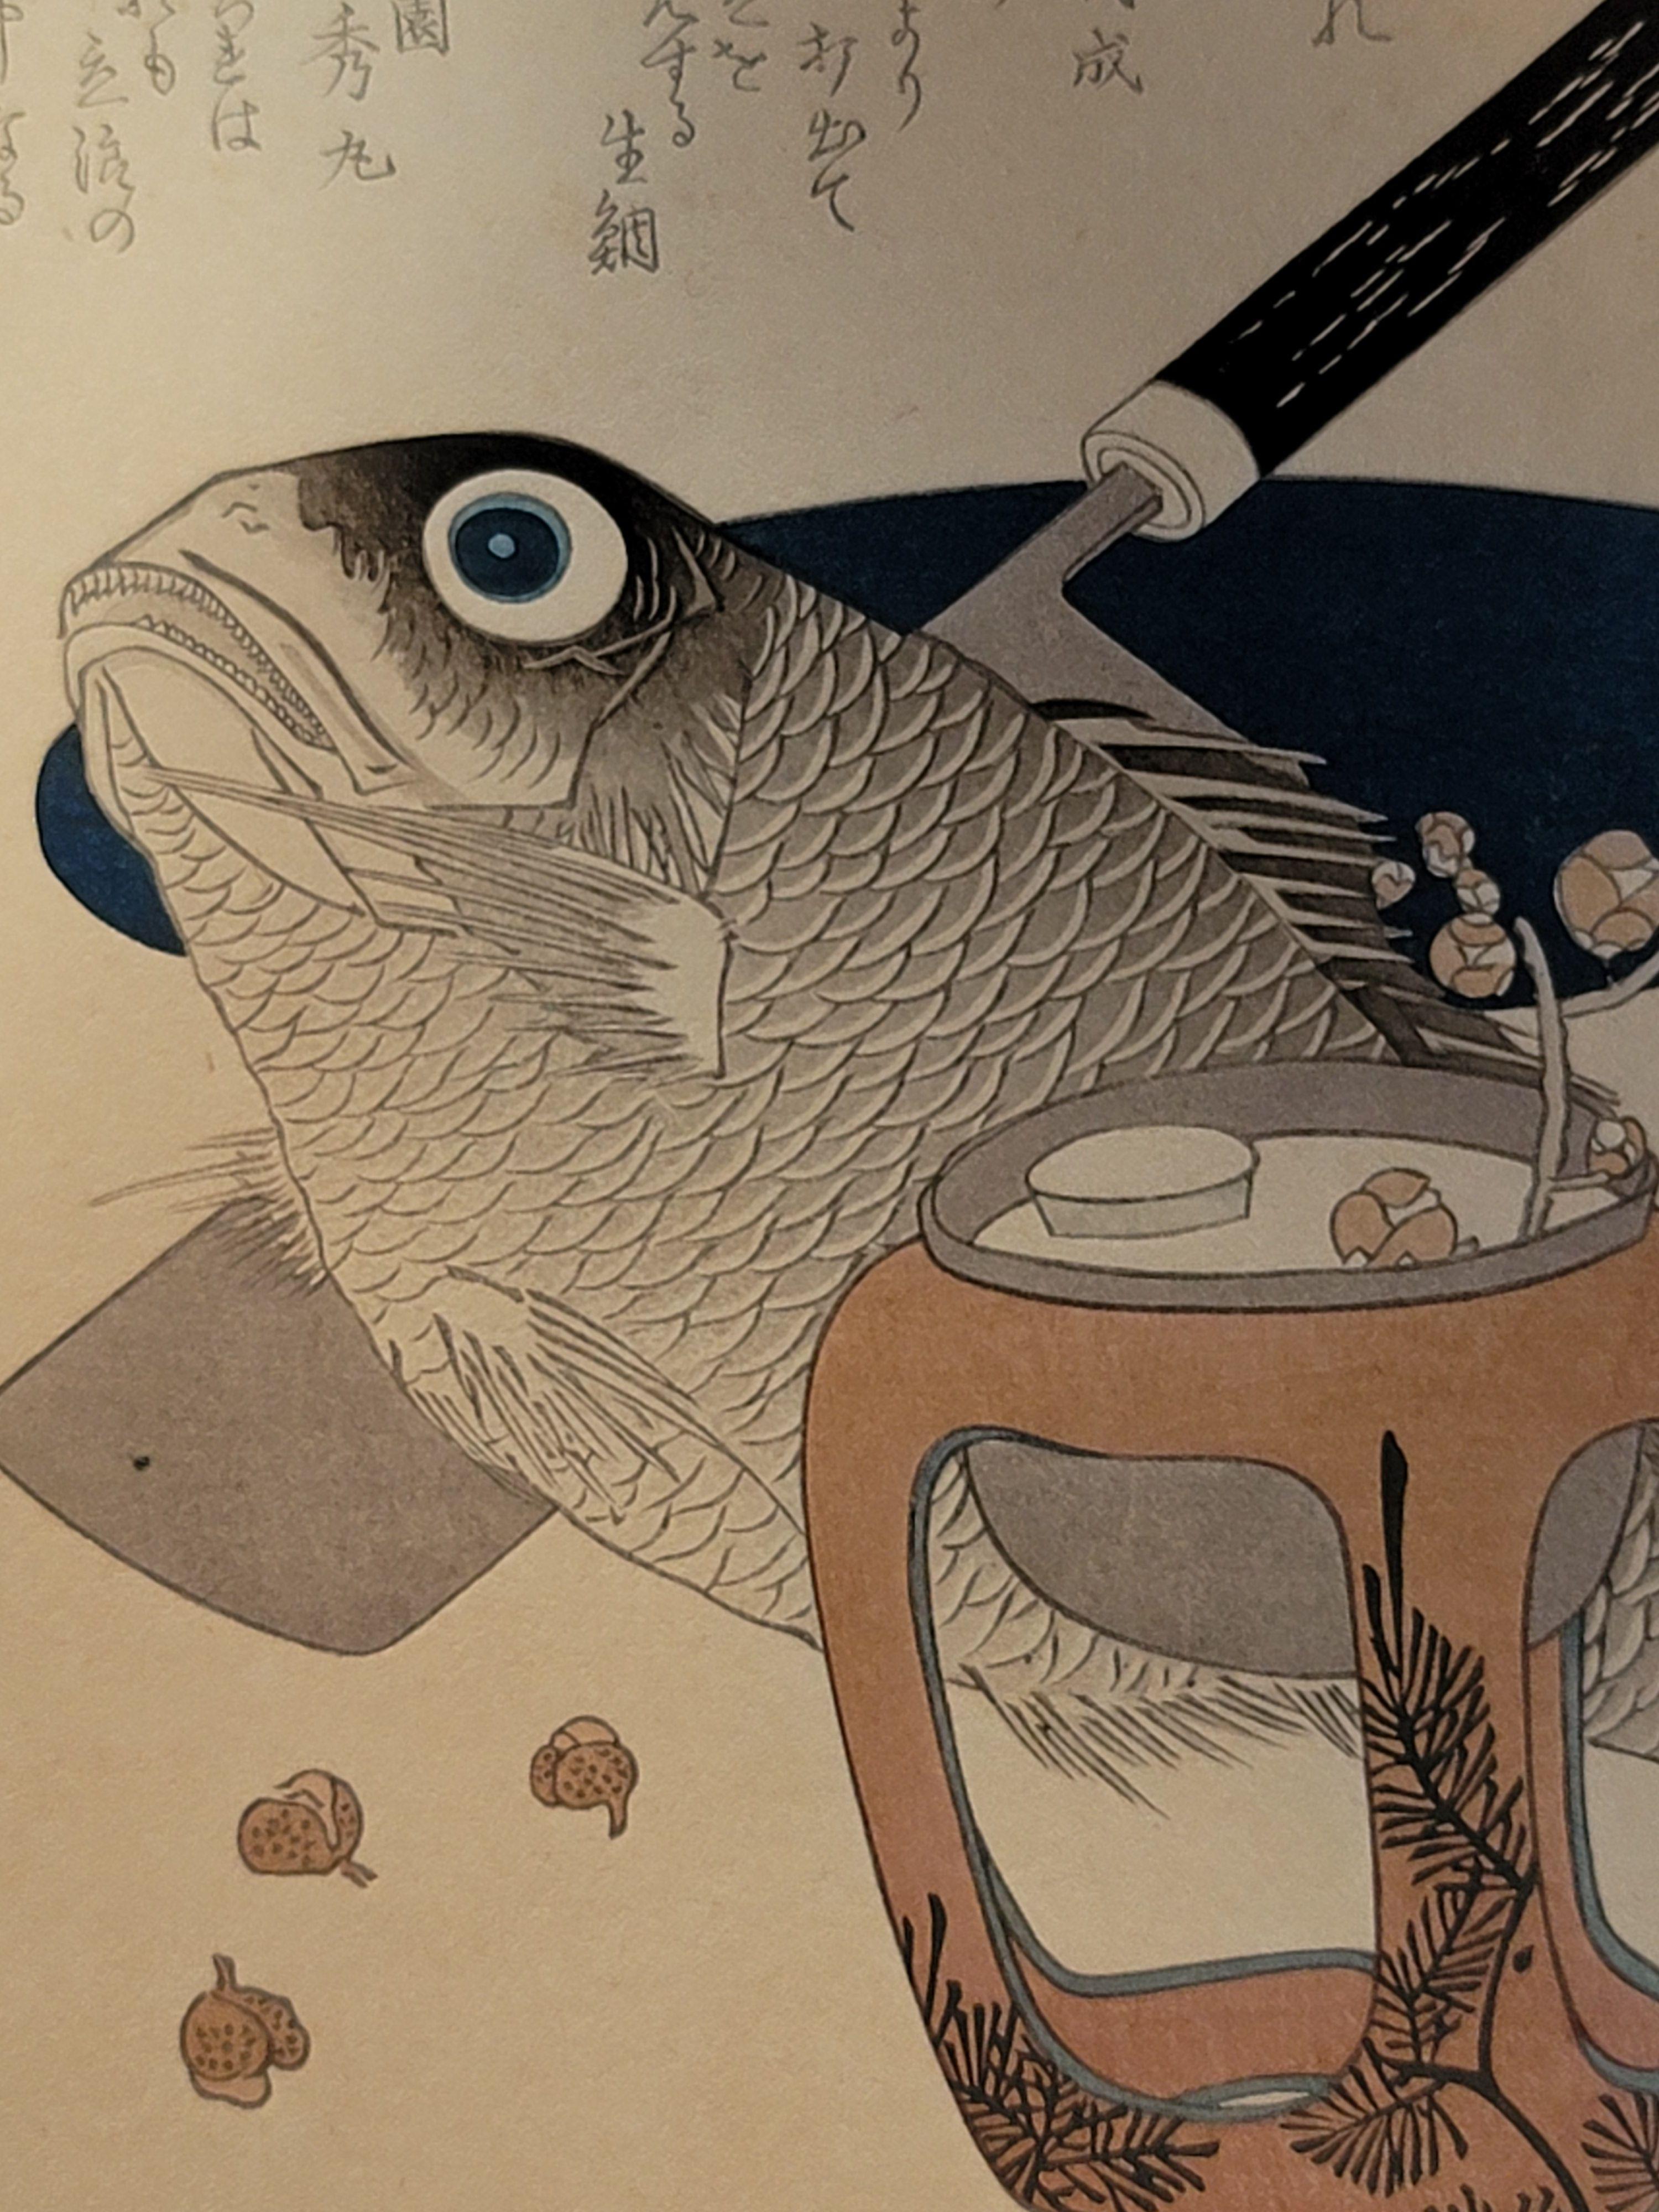 Original japanischer Farbholzschnitt von Totoya Hokkei ????(1780-1850)

Über den Künstler

Totoya Hokkei (?? ??, 1780-1850) war ein japanischer Künstler, der vor allem für seine Grafiken im Ukiyo-e-Stil bekannt war. Hokusai war einer der ersten